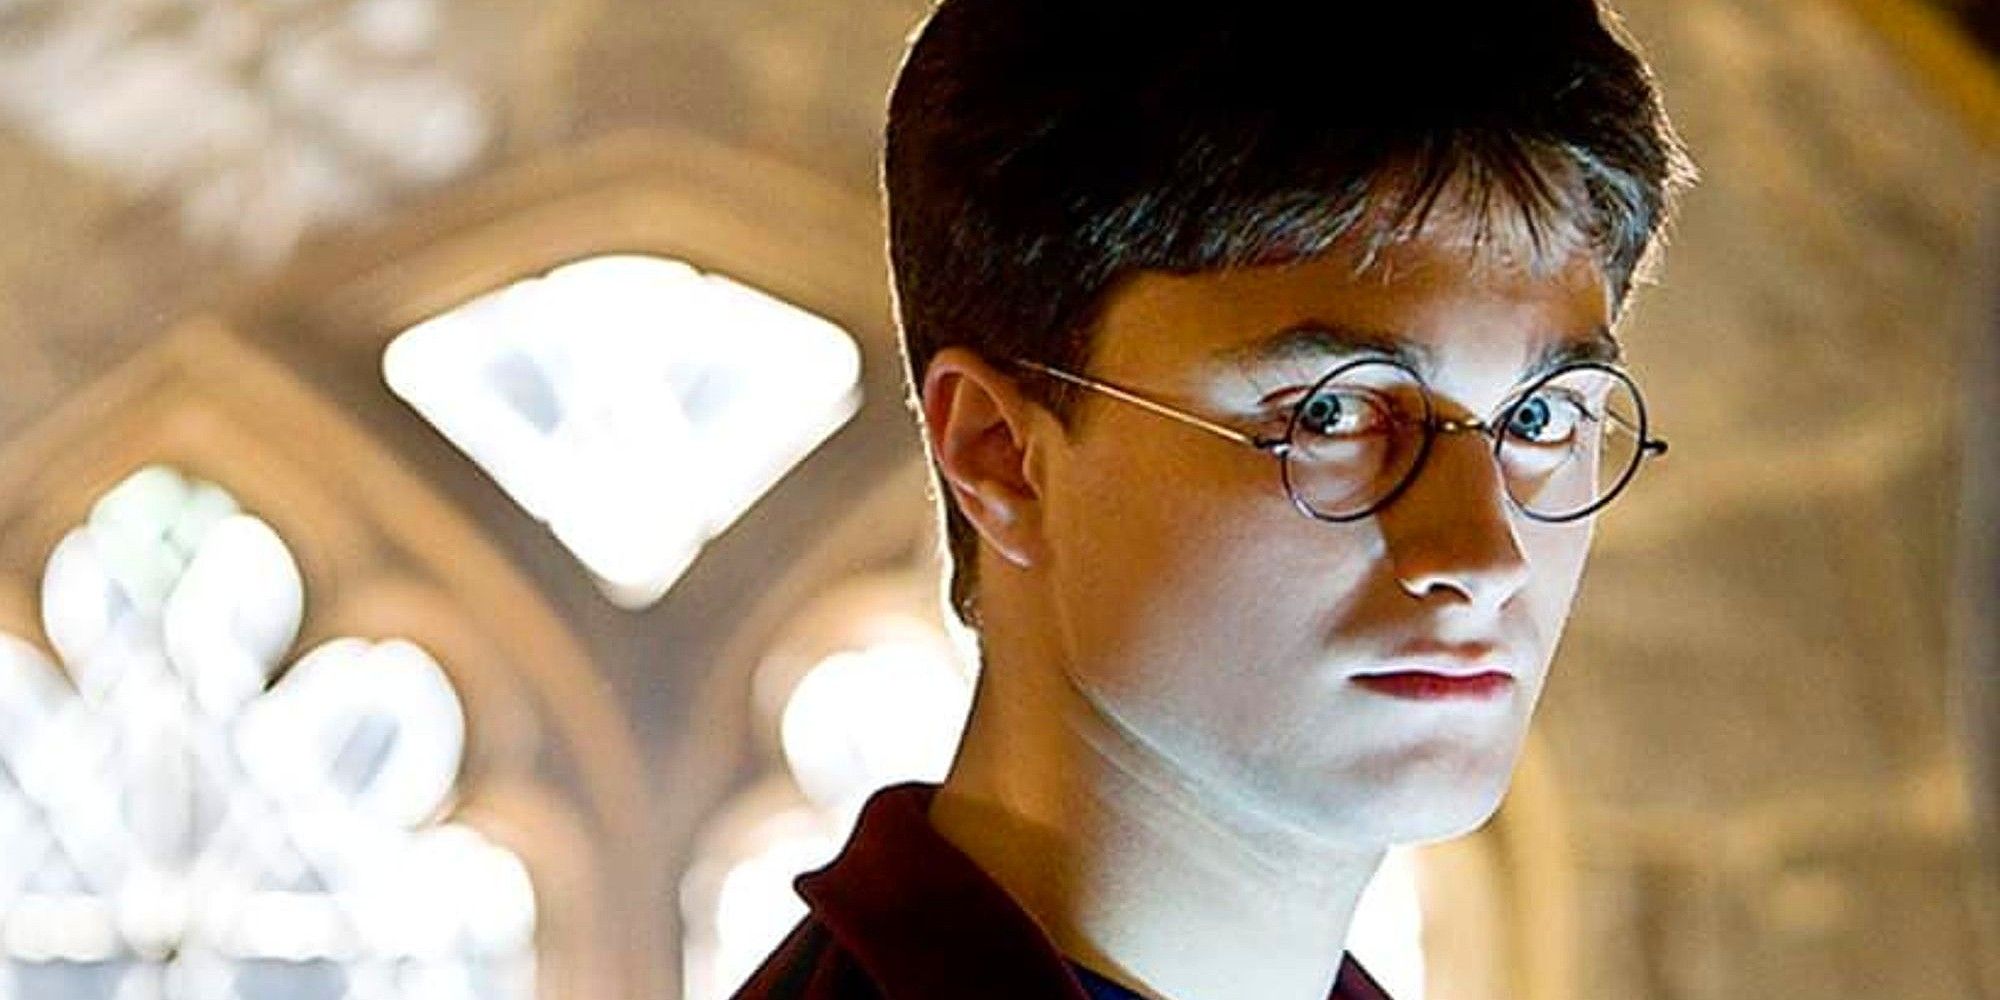 “Prevenido es prevenido”: JK Rowling responde sin rodeos al boicot al programa de Harry Potter